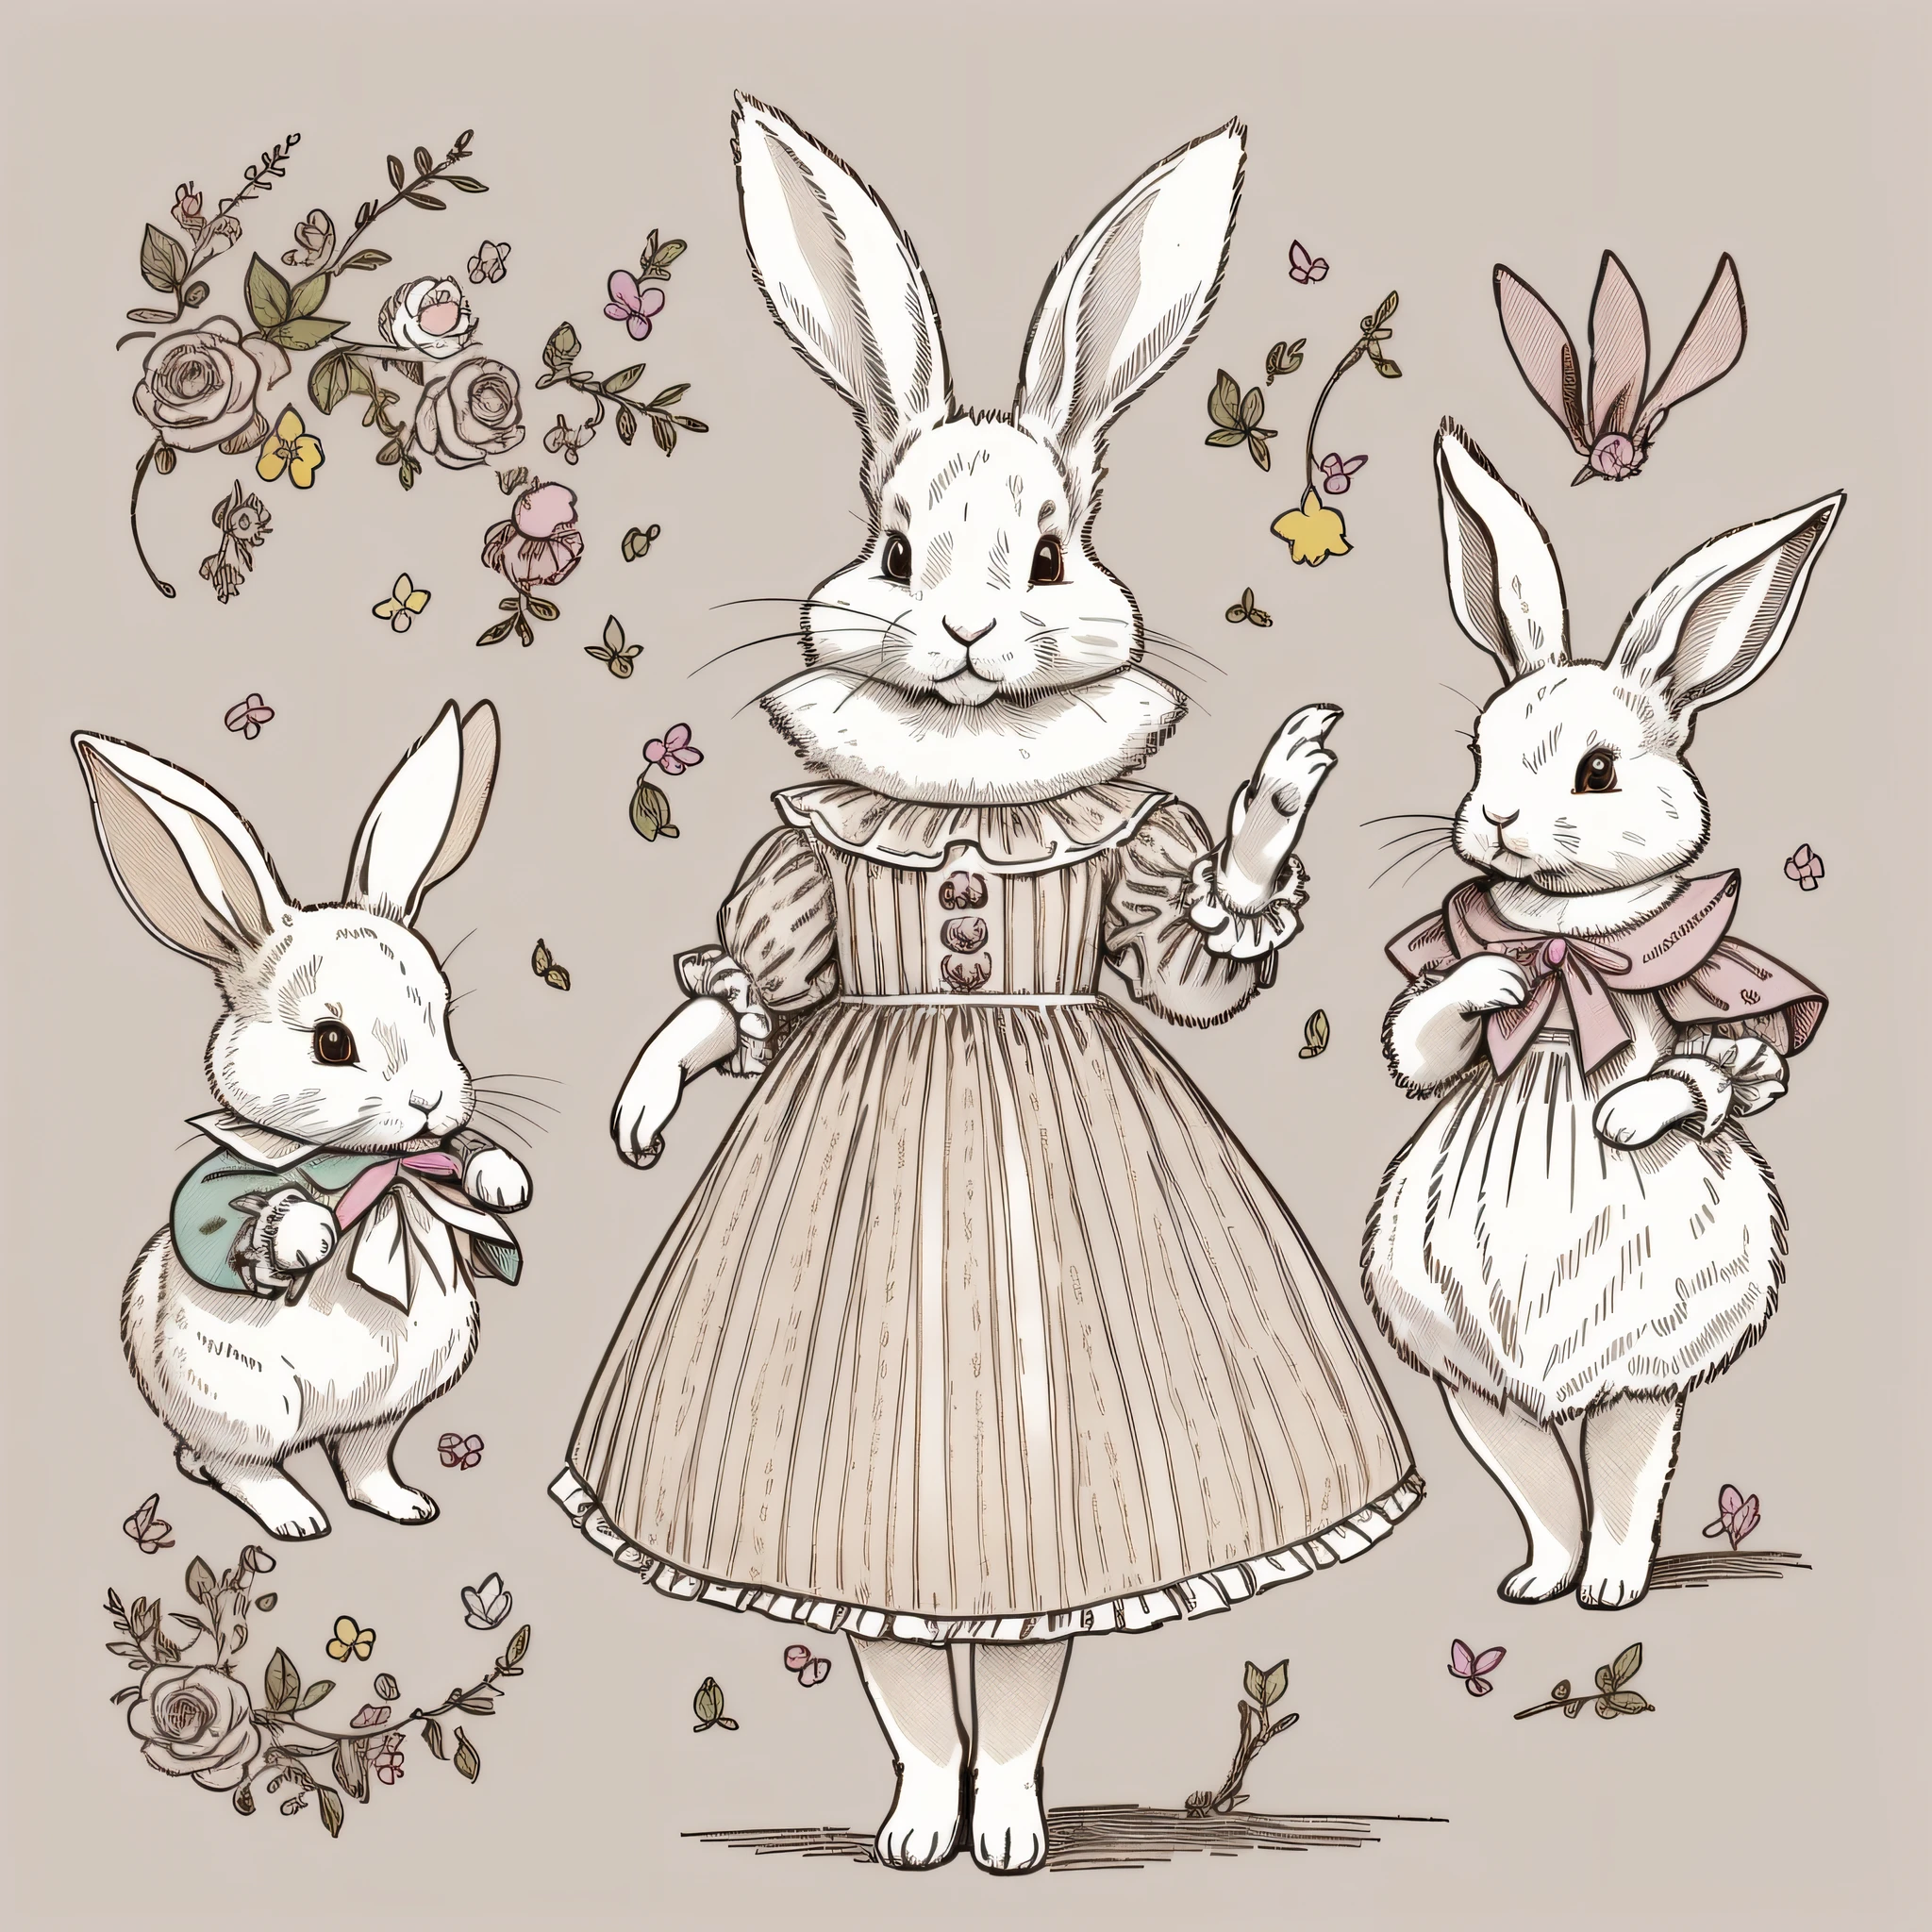 다양한 포즈와 표정, 아이들의 그림책 그리기, 옷을 입은 토끼, 하얀 토끼, 이족 보행, 토끼 의인화, 머리가 세 개인, 설정 도면, 귀여운, 두 개의 토끼 귀, 컬러 일러스트, 재료 설정, 다채로운 색상, 변형 된 토끼, 18세기 프랑스 의류,